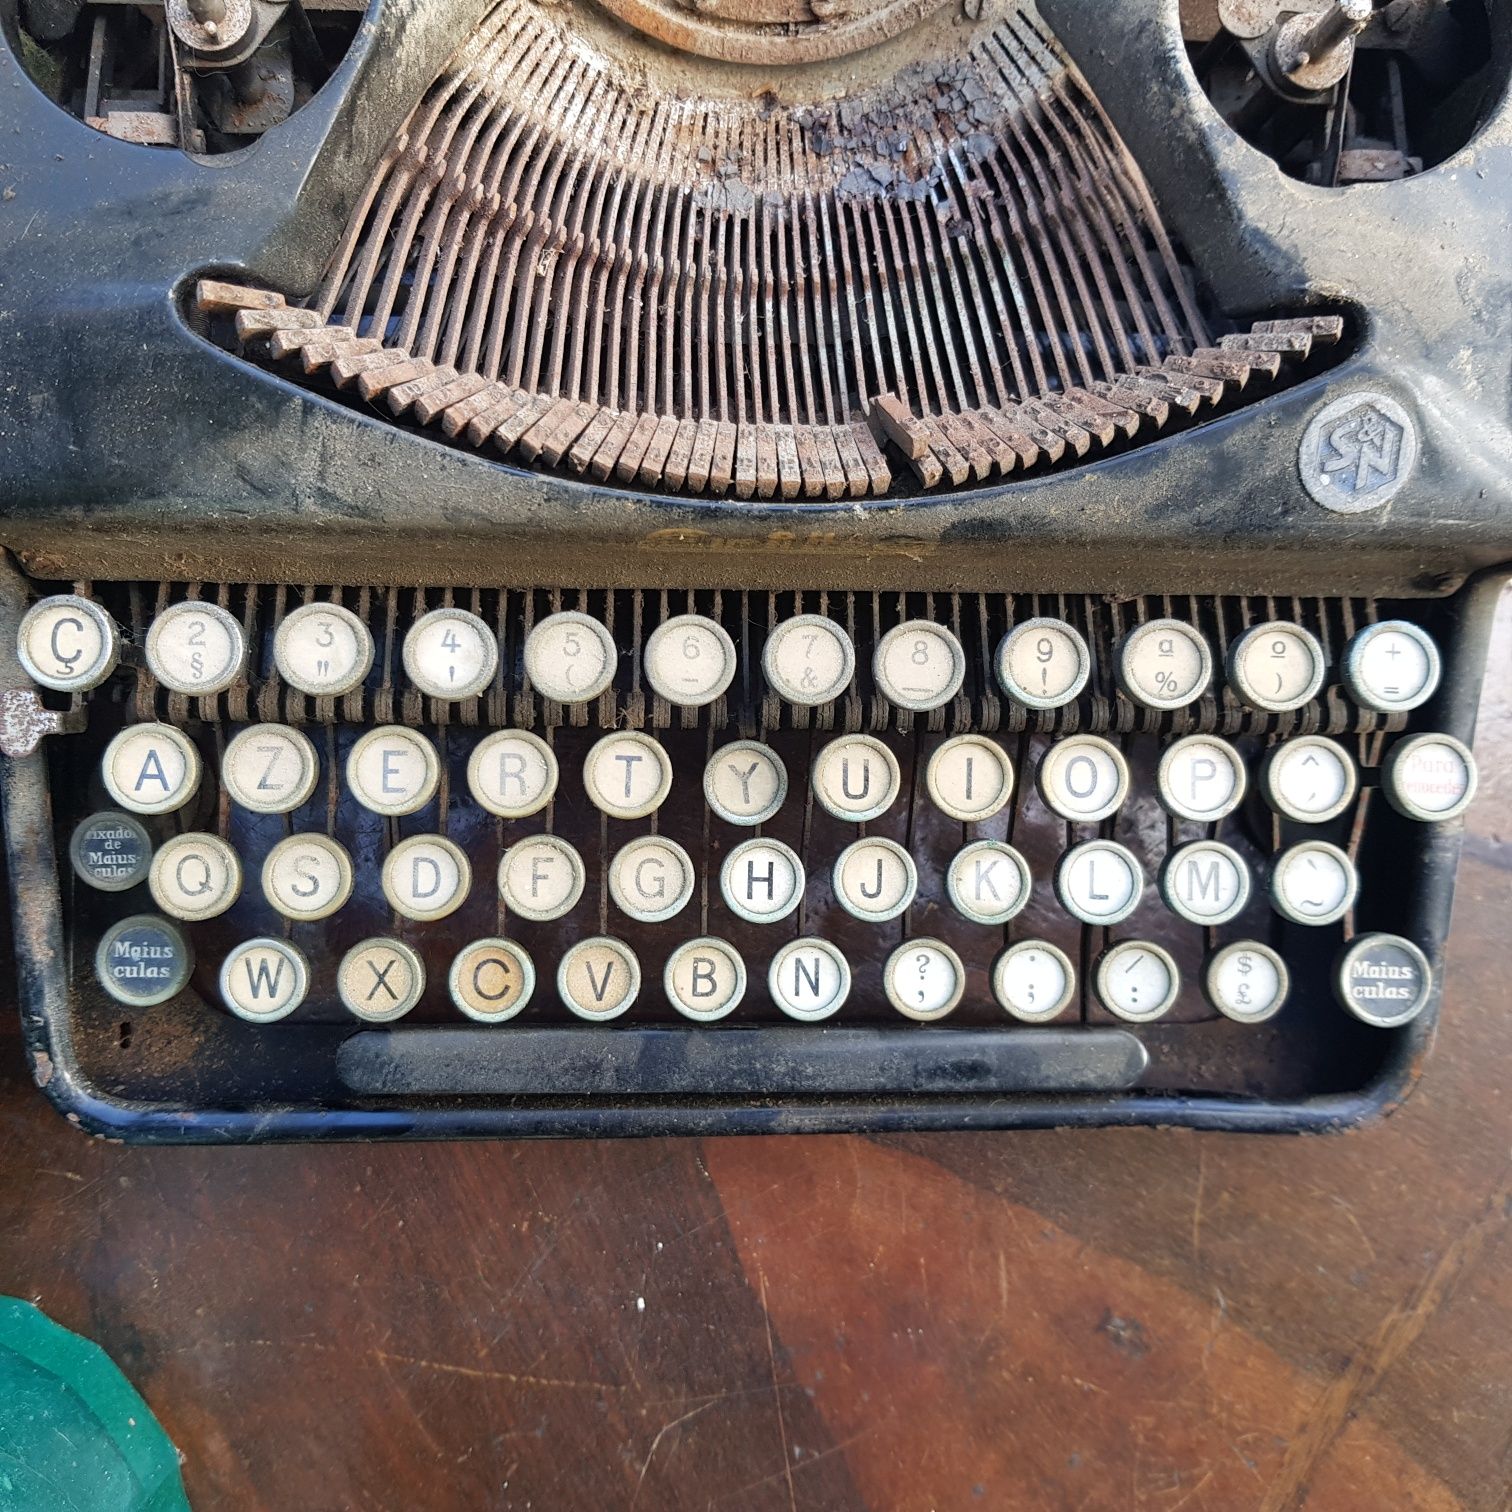 Máquina de escrever antiga para restauro